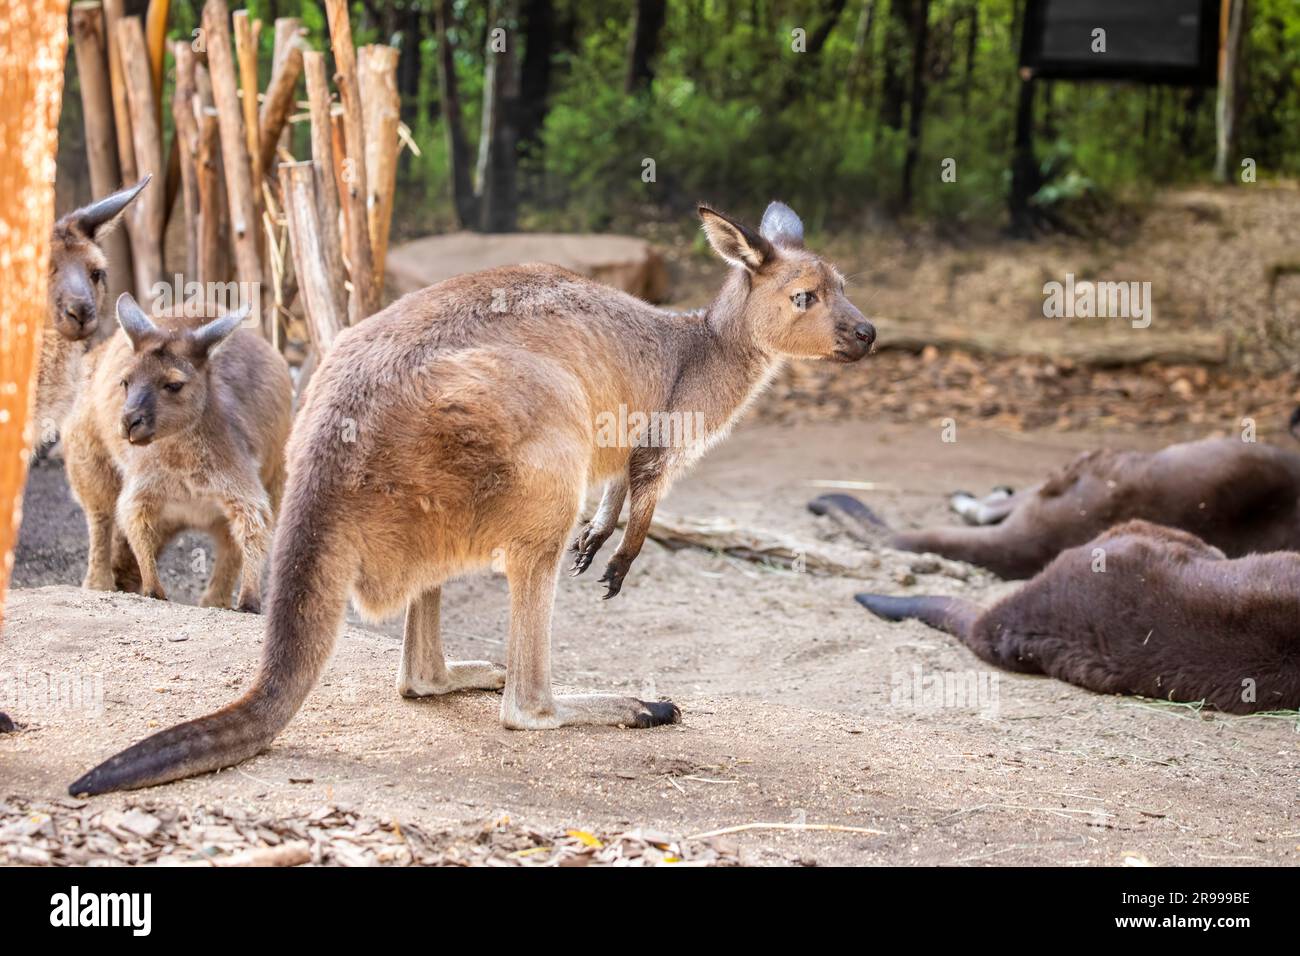 Le kangourou gris occidental (Macropus fuliginosus) est un grand kangourou très commun que l'on trouve dans presque toute la partie sud de l'Australie. Banque D'Images